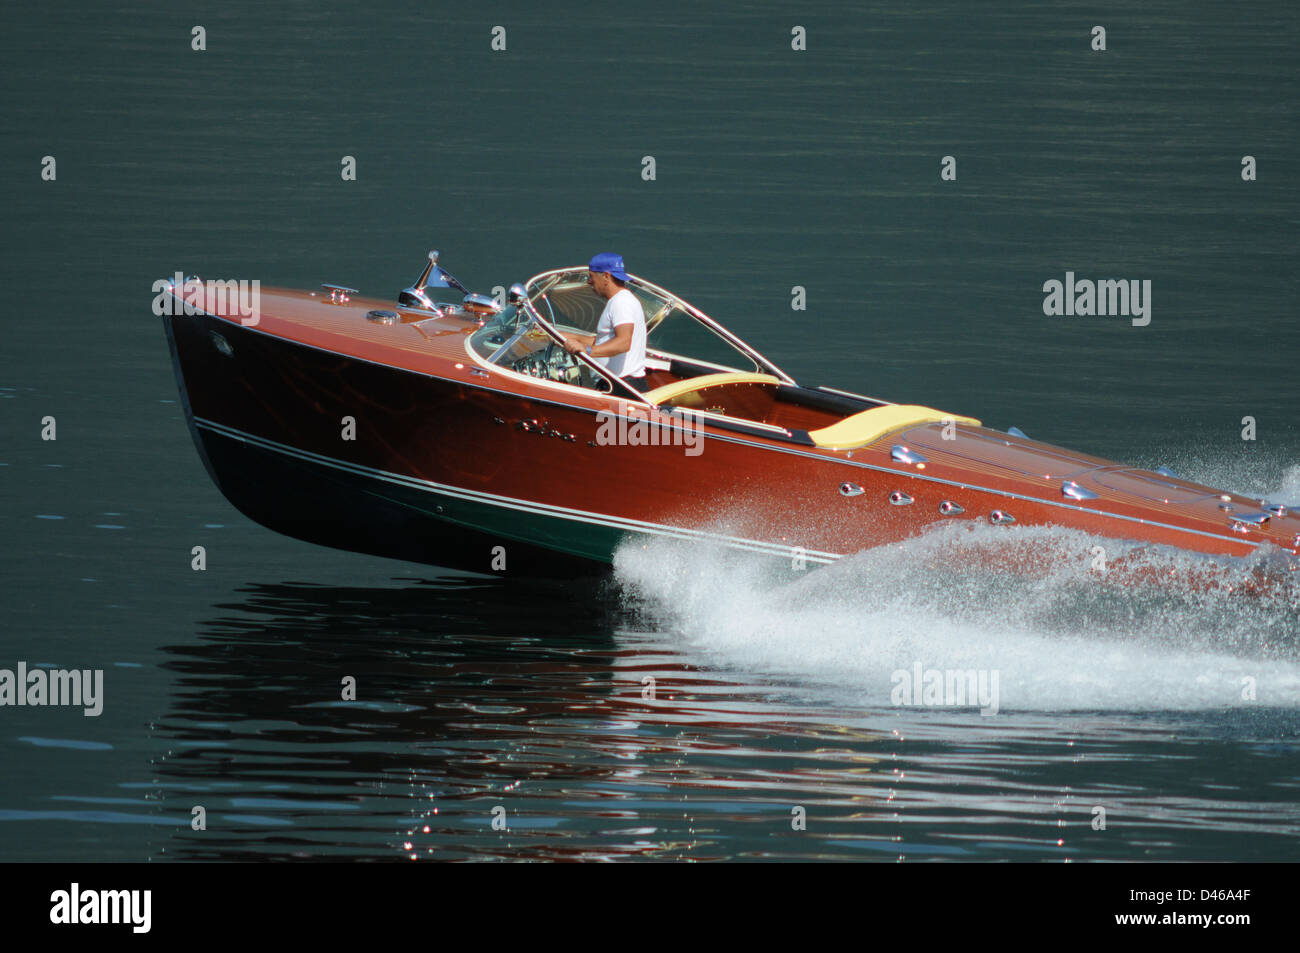 Riva Bateaux à moteur classique, le lac de Côme, Italie, juin 2009. Riva bateau Triton de vitesse est sur le lac de Côme, Italie. Banque D'Images